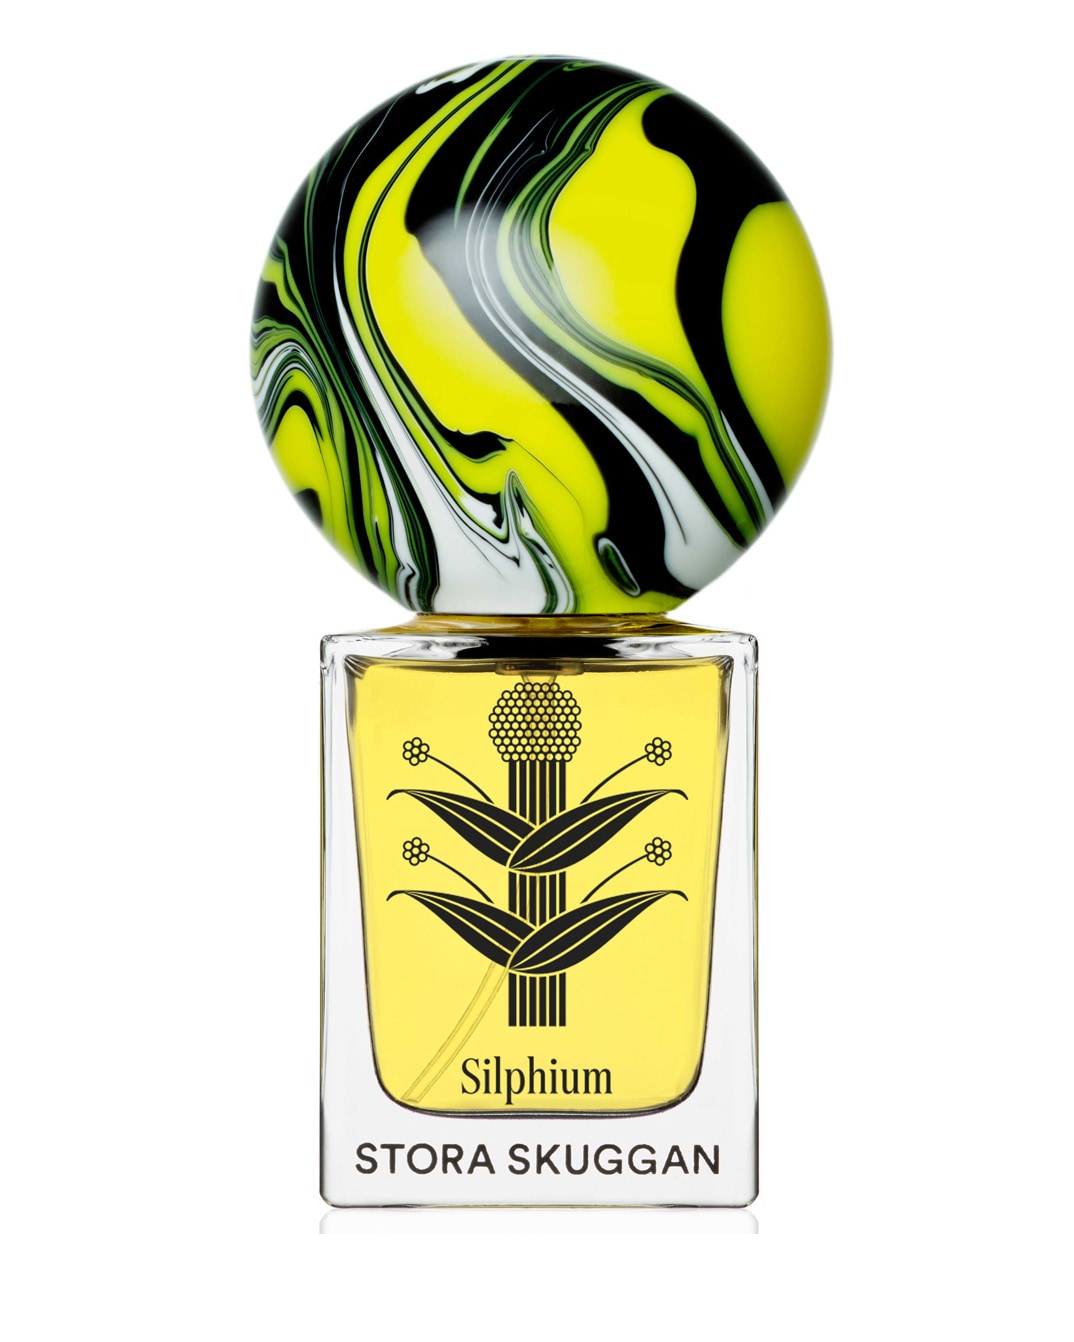 Eau de parfum Silphium, STORA SKUGGAN (130 €, da Fragrans in Fabula).